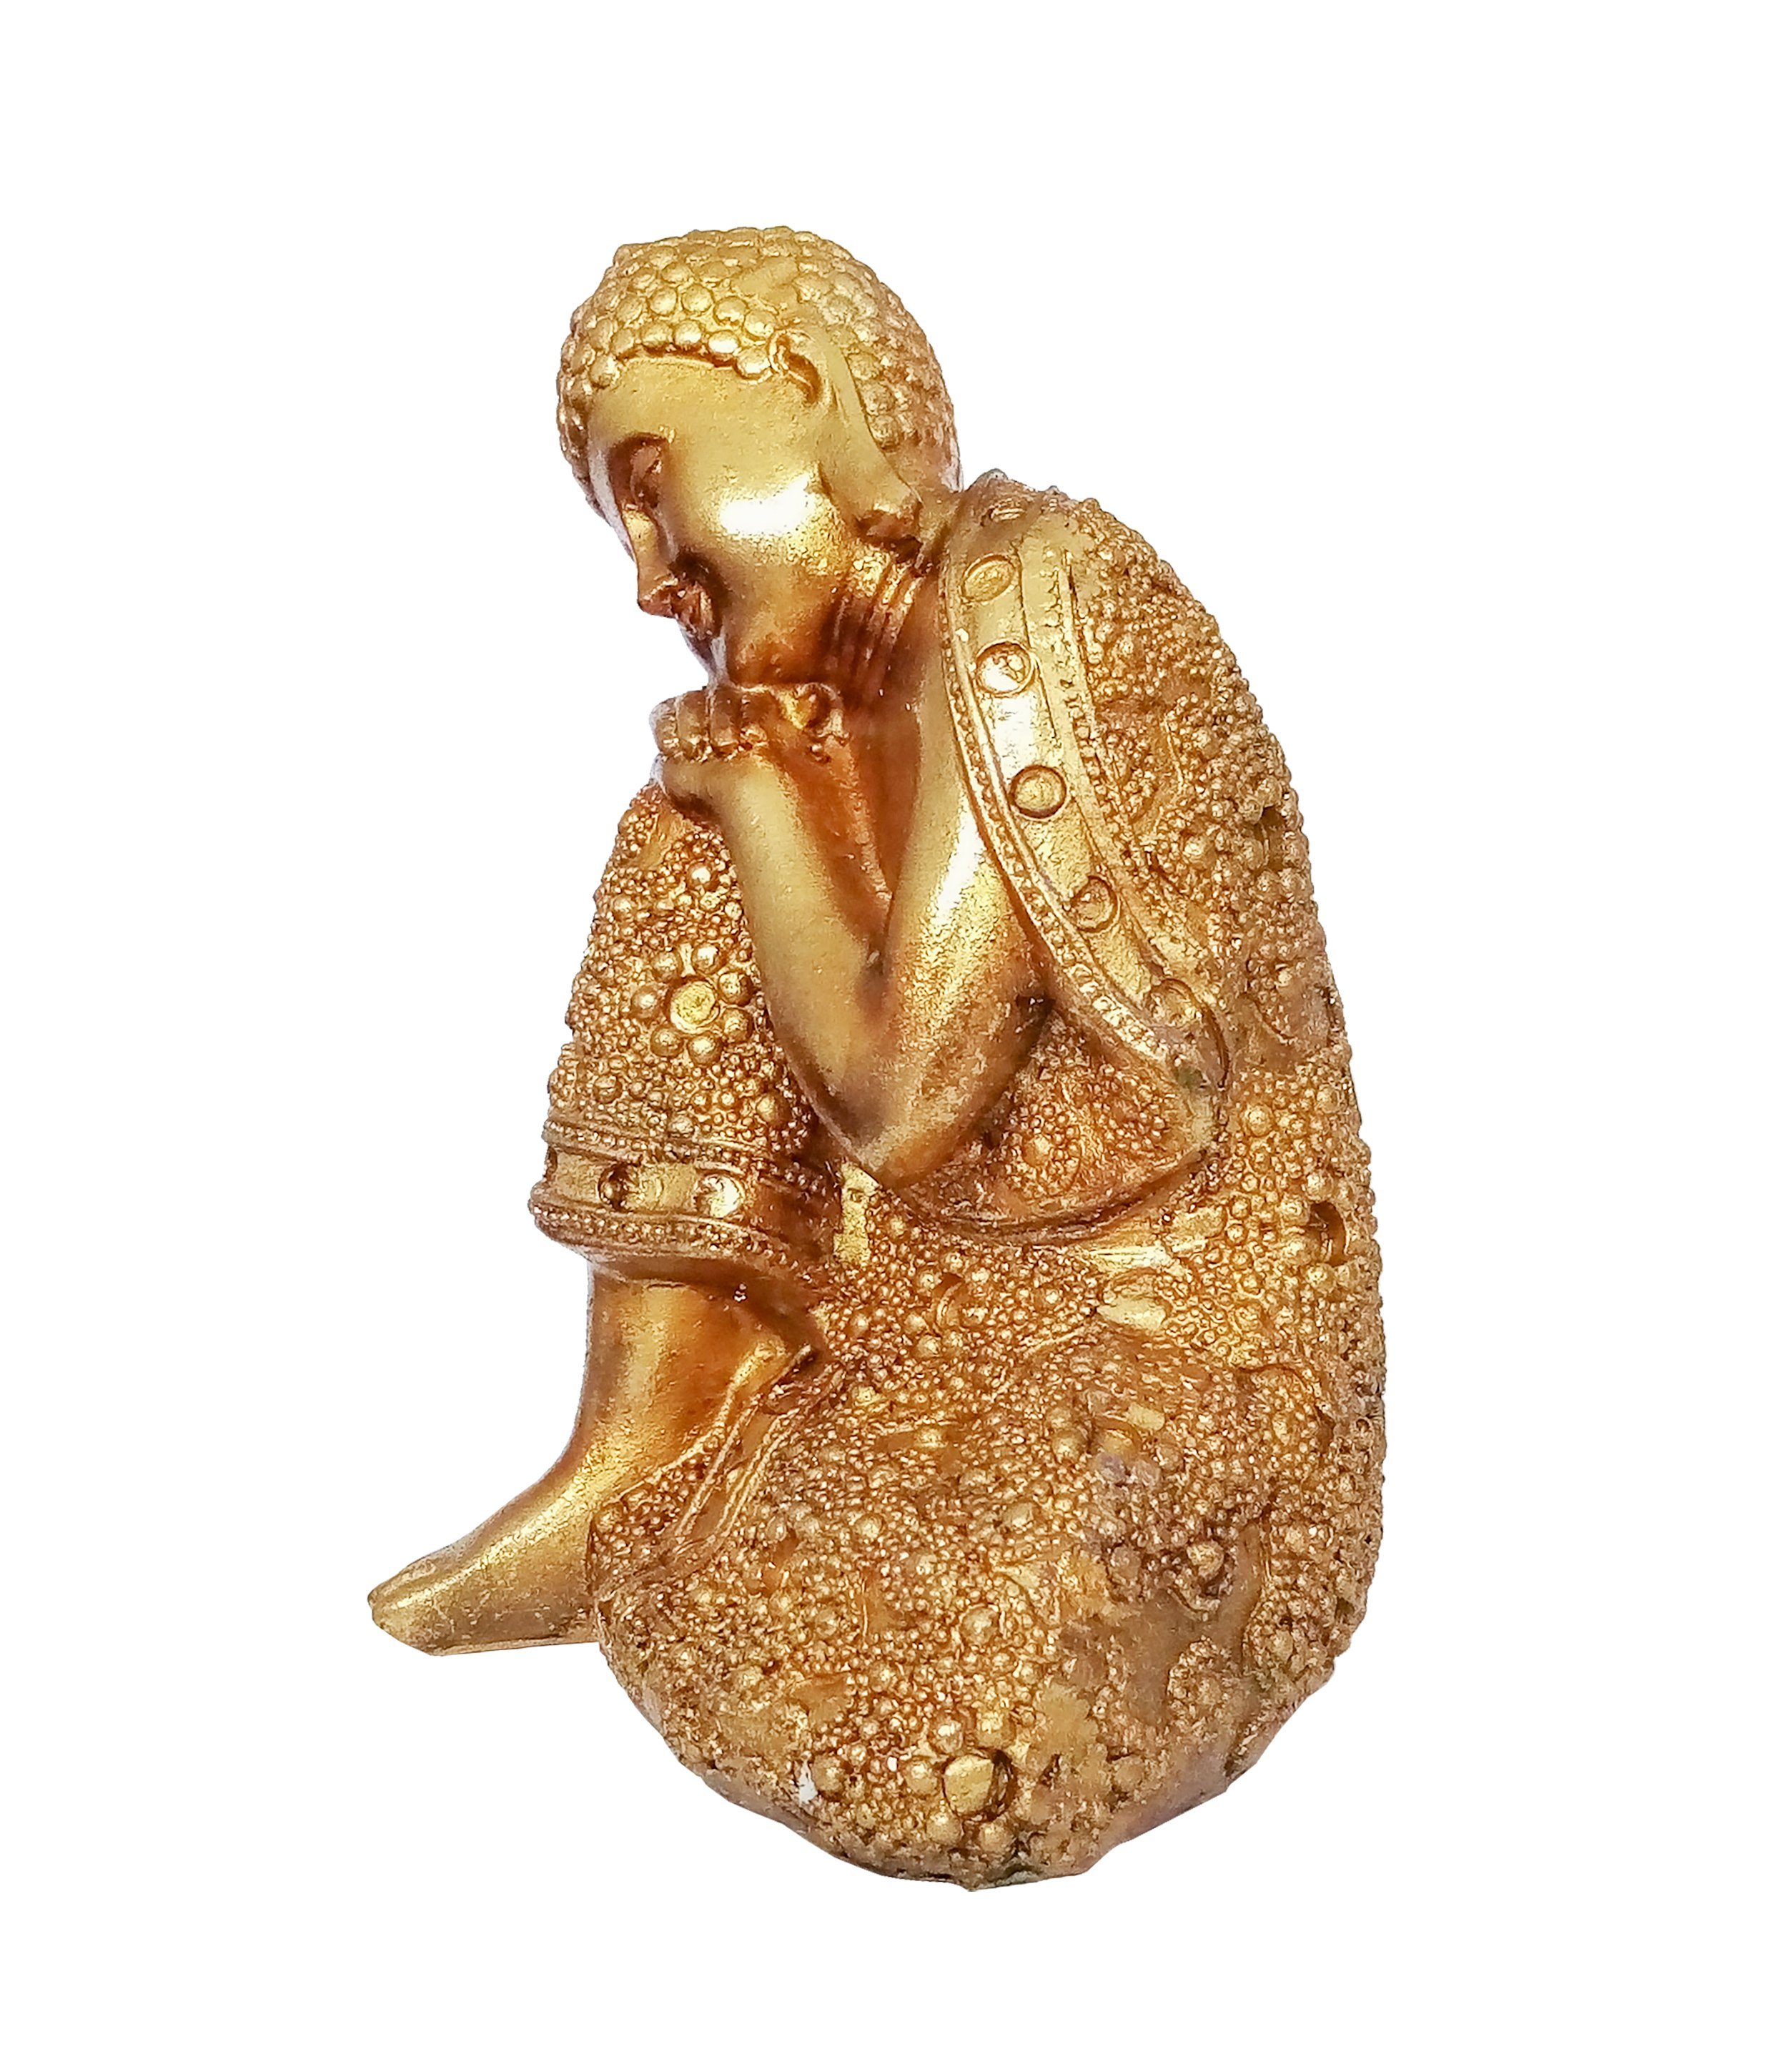 Giftdecor Buddhafigur Buddha Figur 12x16cm Shui Knie), Budda Garten Knie 91 Auf Deko Statue Polyresin aus Decoration Feng rechtes Thai (auf Gold